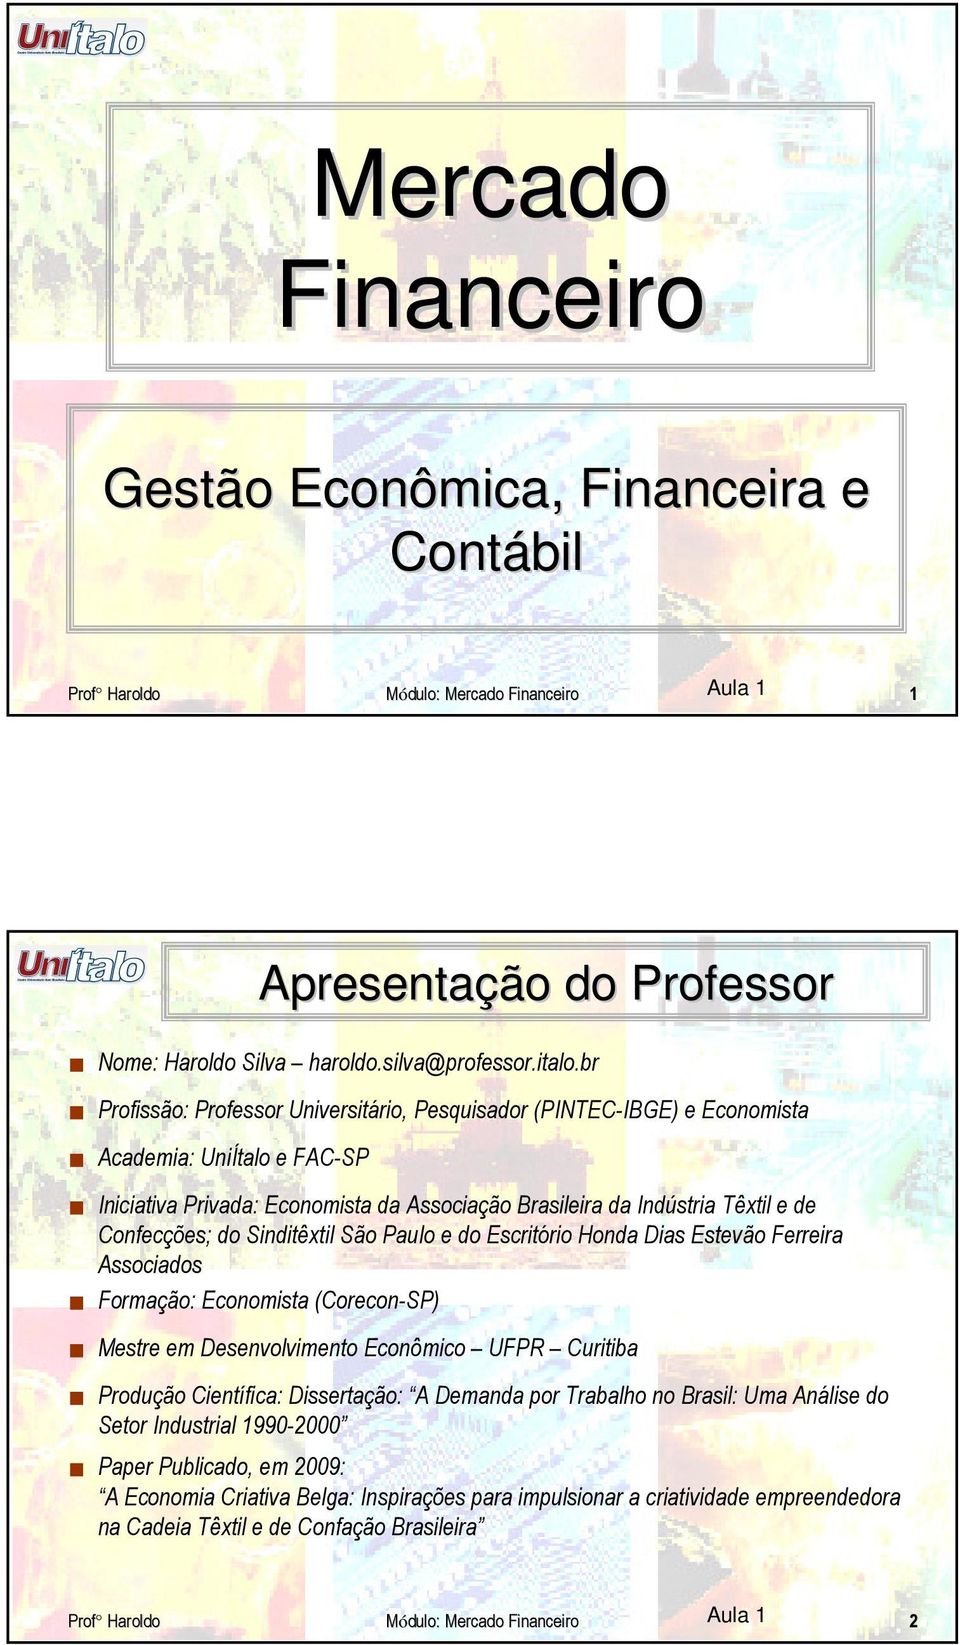 Confecções; do Sinditêxtil São Paulo e do Escritório Honda Dias Estevão Ferreira Associados Formação: Economista (Corecon-SP) Mestre em Desenvolvimento Econômico UFPR Curitiba Produção